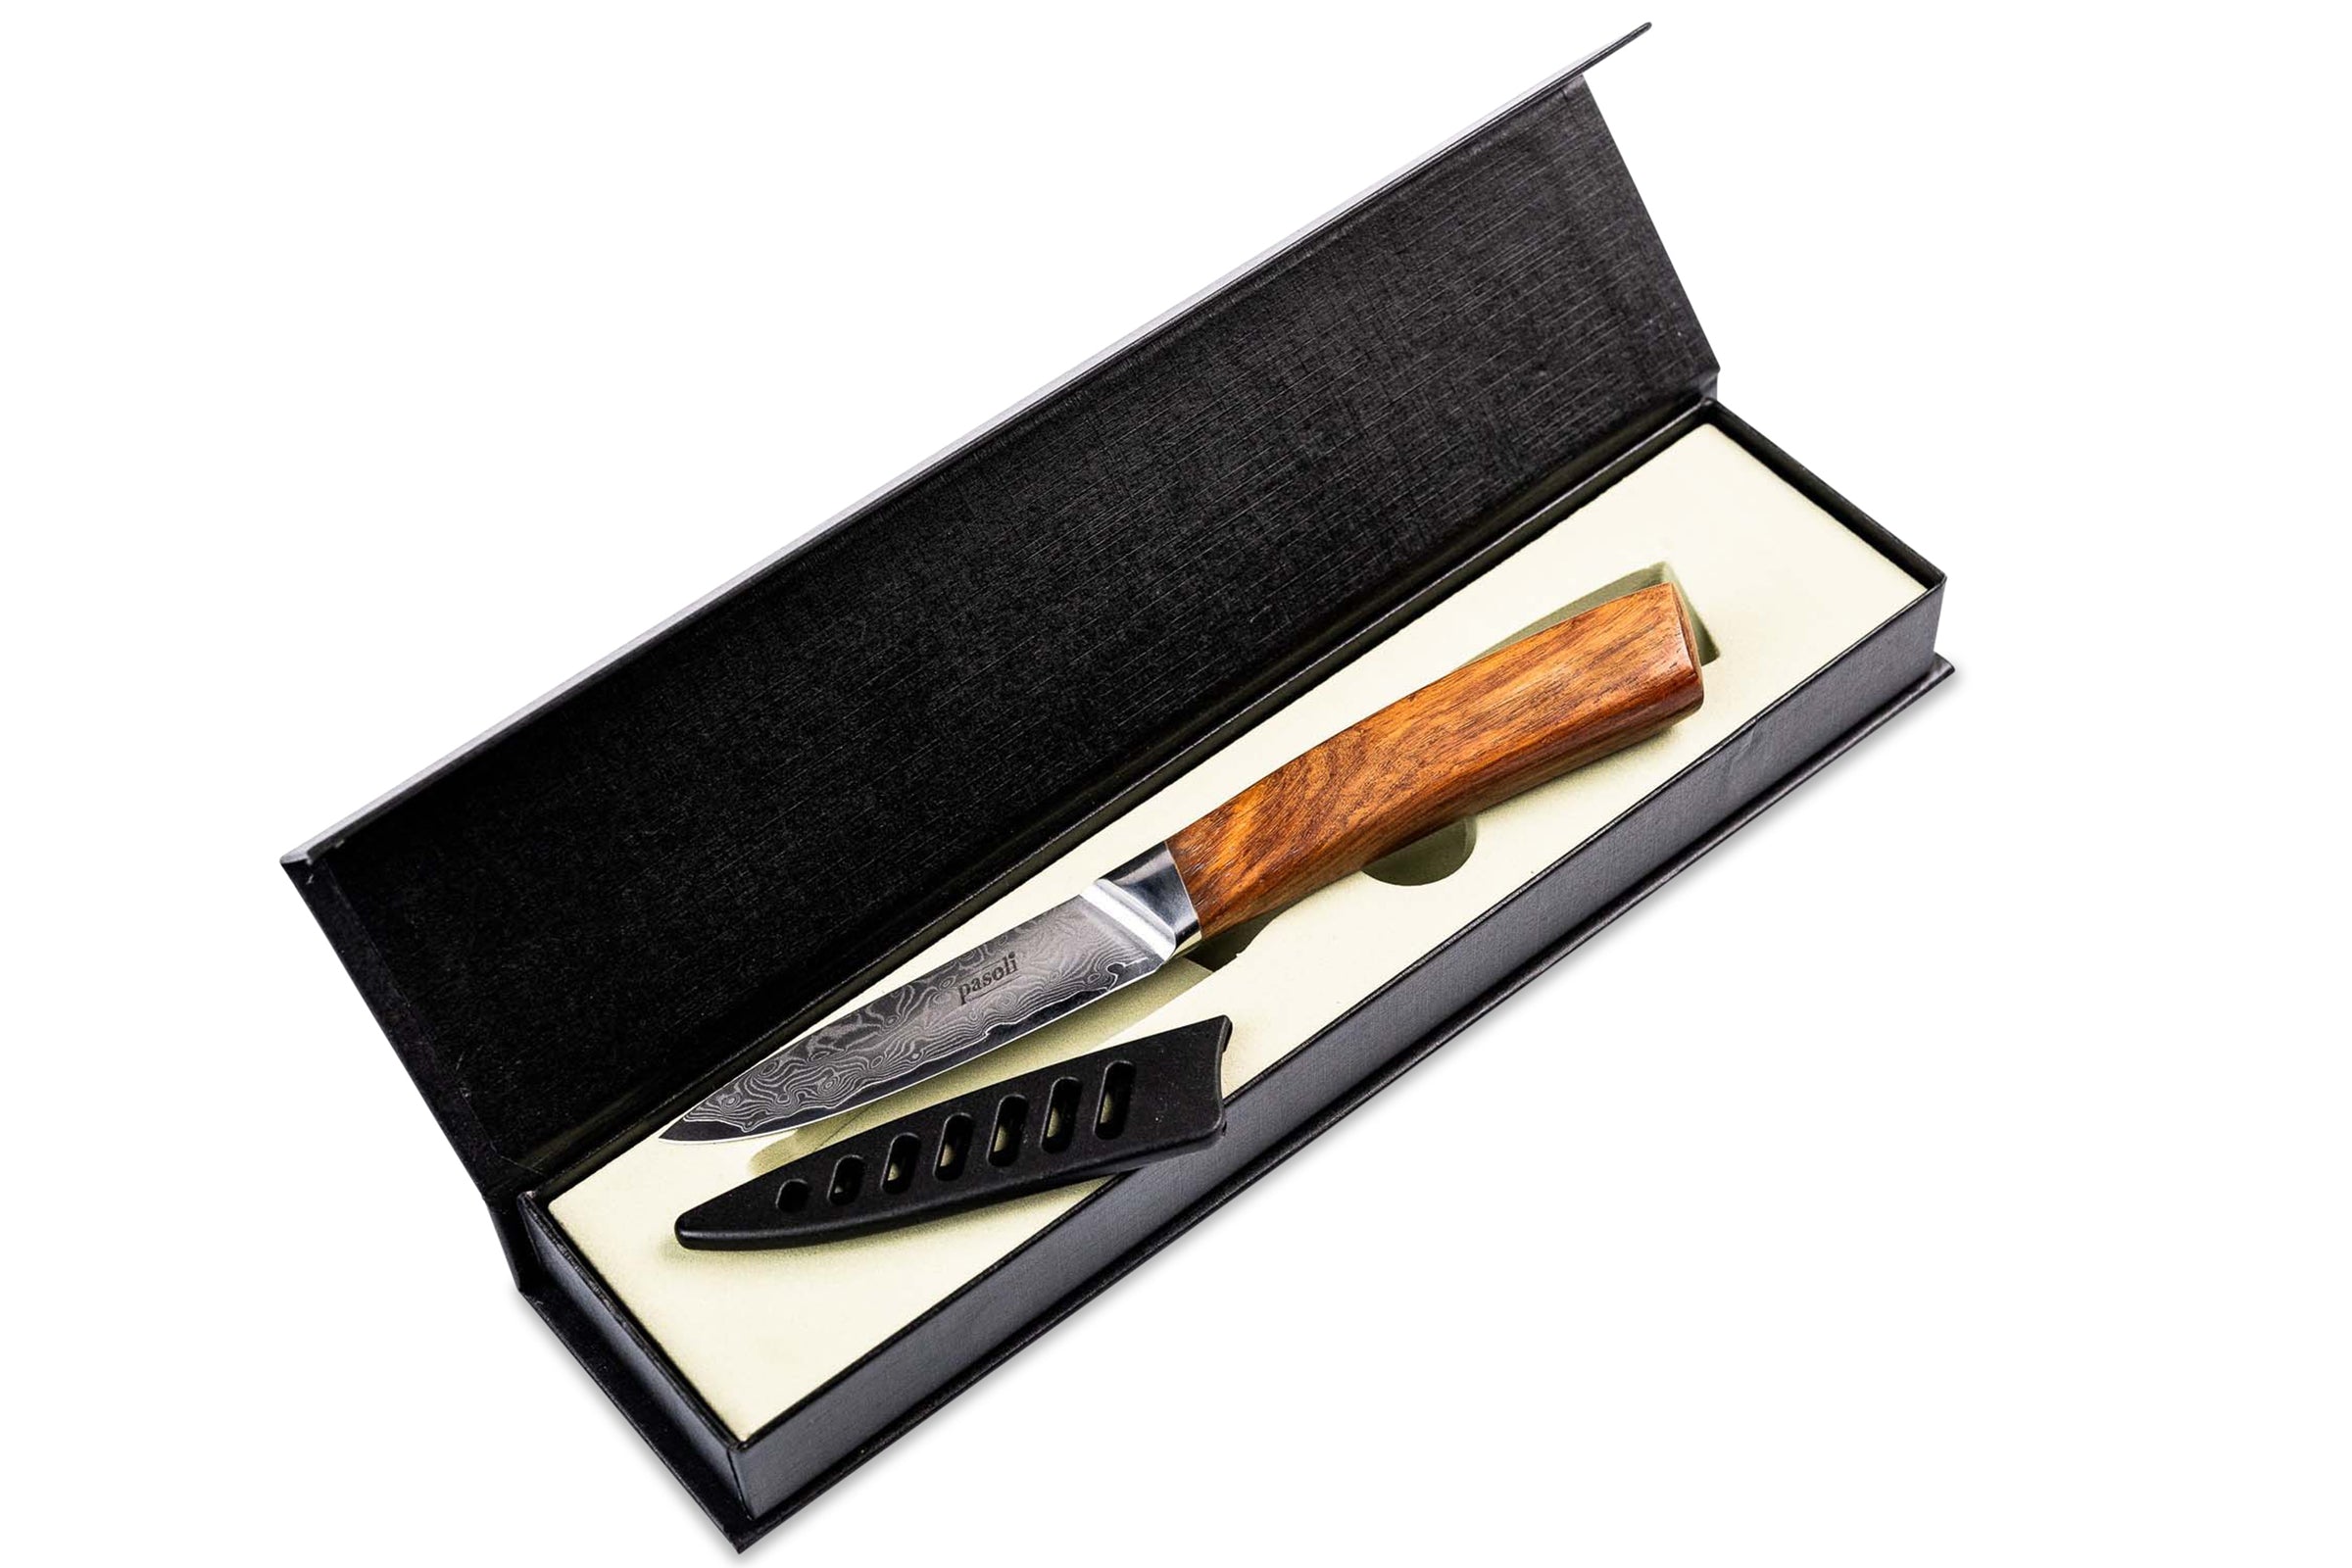 Cuchillo para verdura de damasco pasoli en un elegante embalaje de regalo que incluye protección para la hoja.